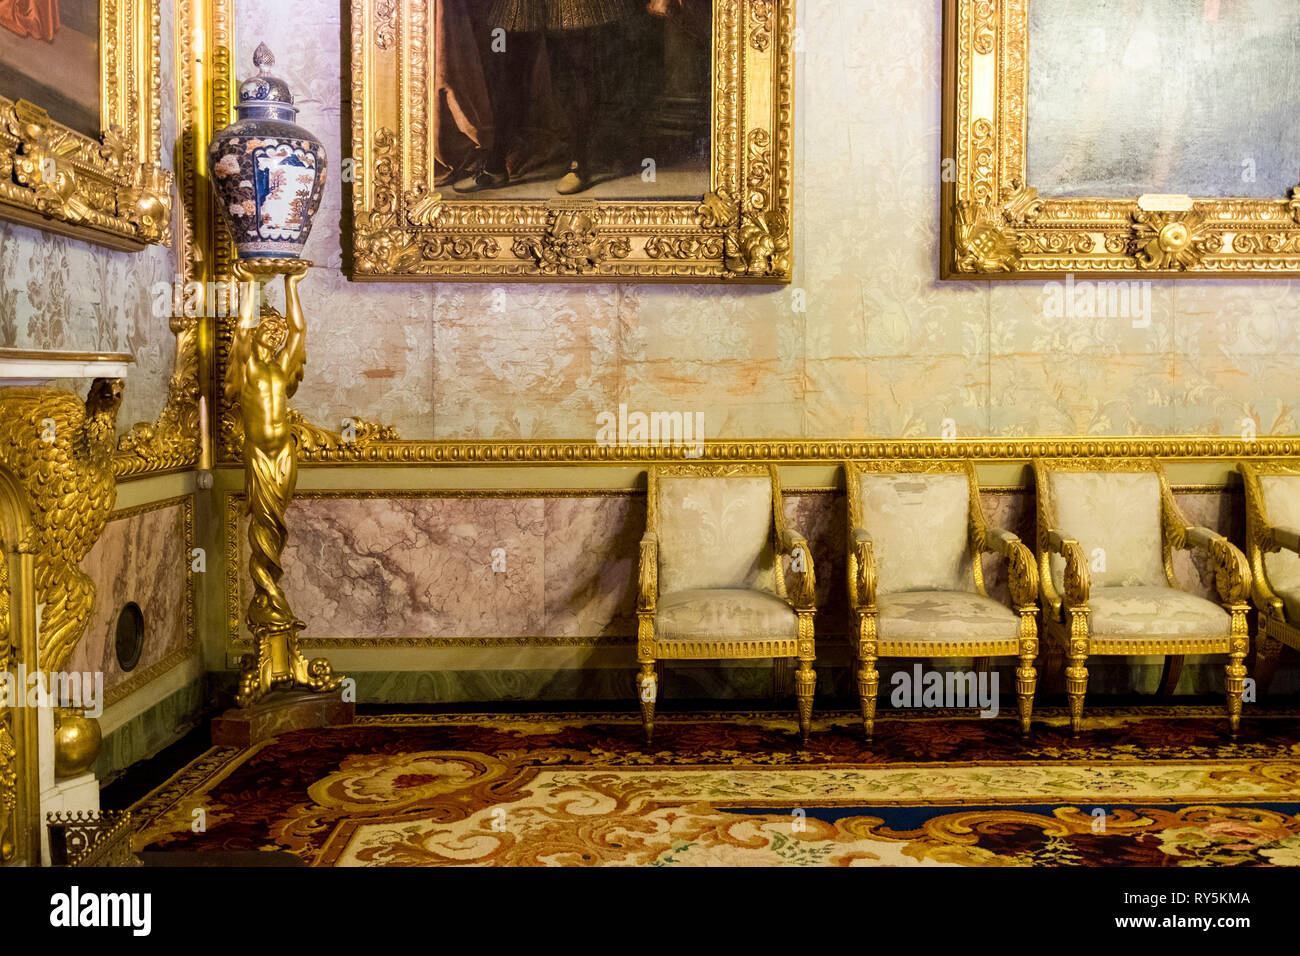 Prix de détail, une partie de l'intérieur riche du Palais Pitti à Florence, Italie Banque D'Images